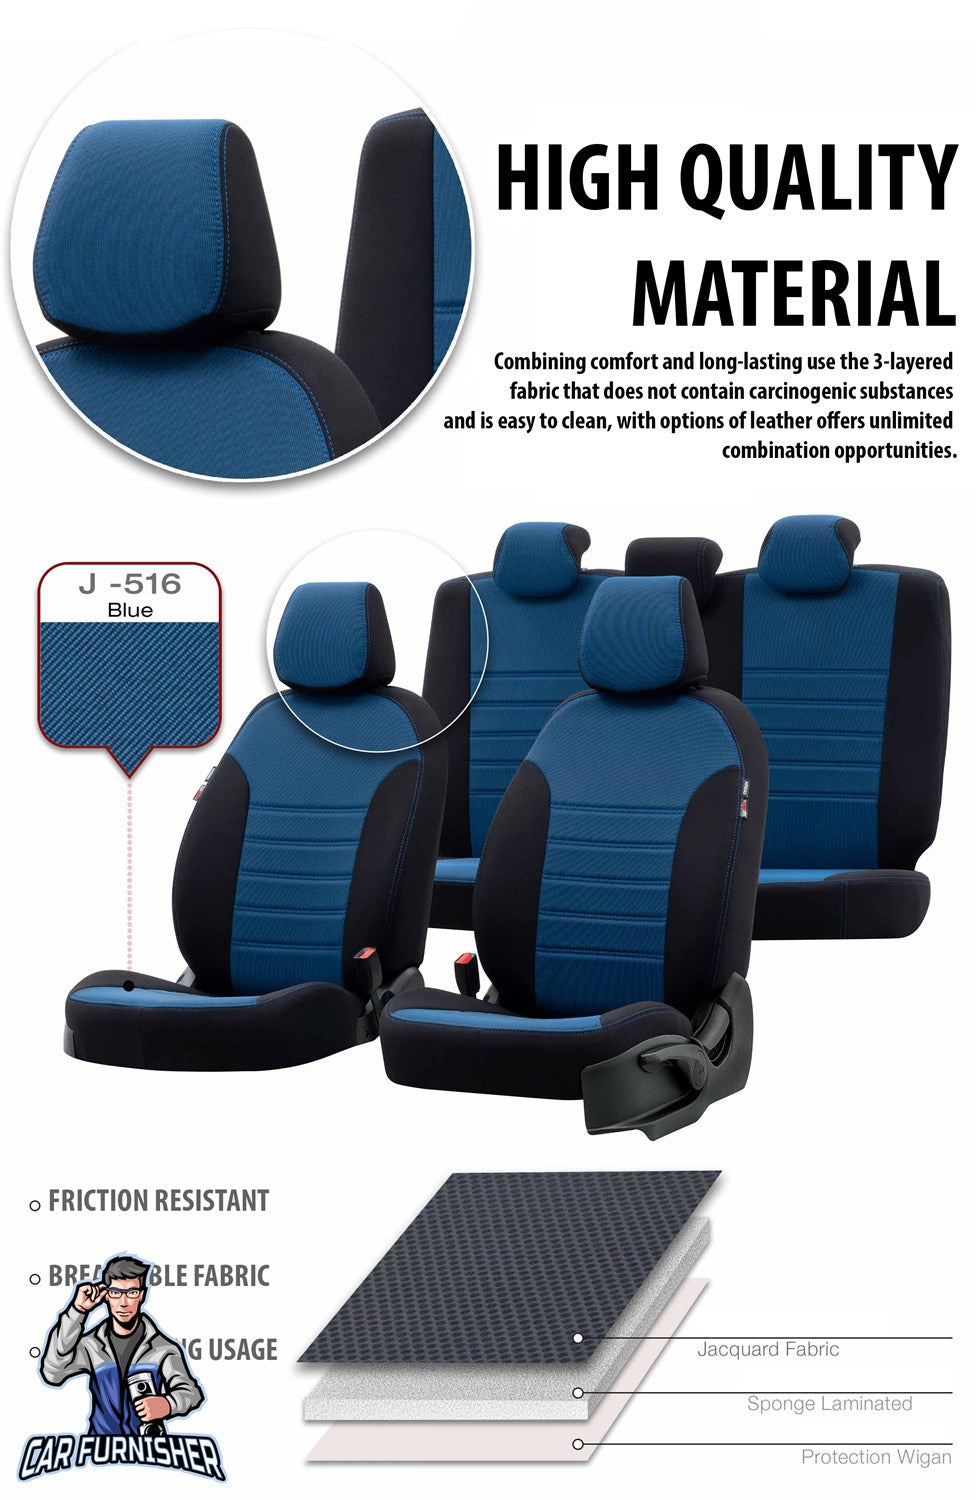 Fiat Punto Seat Covers Original Jacquard Design Dark Beige Jacquard Fabric